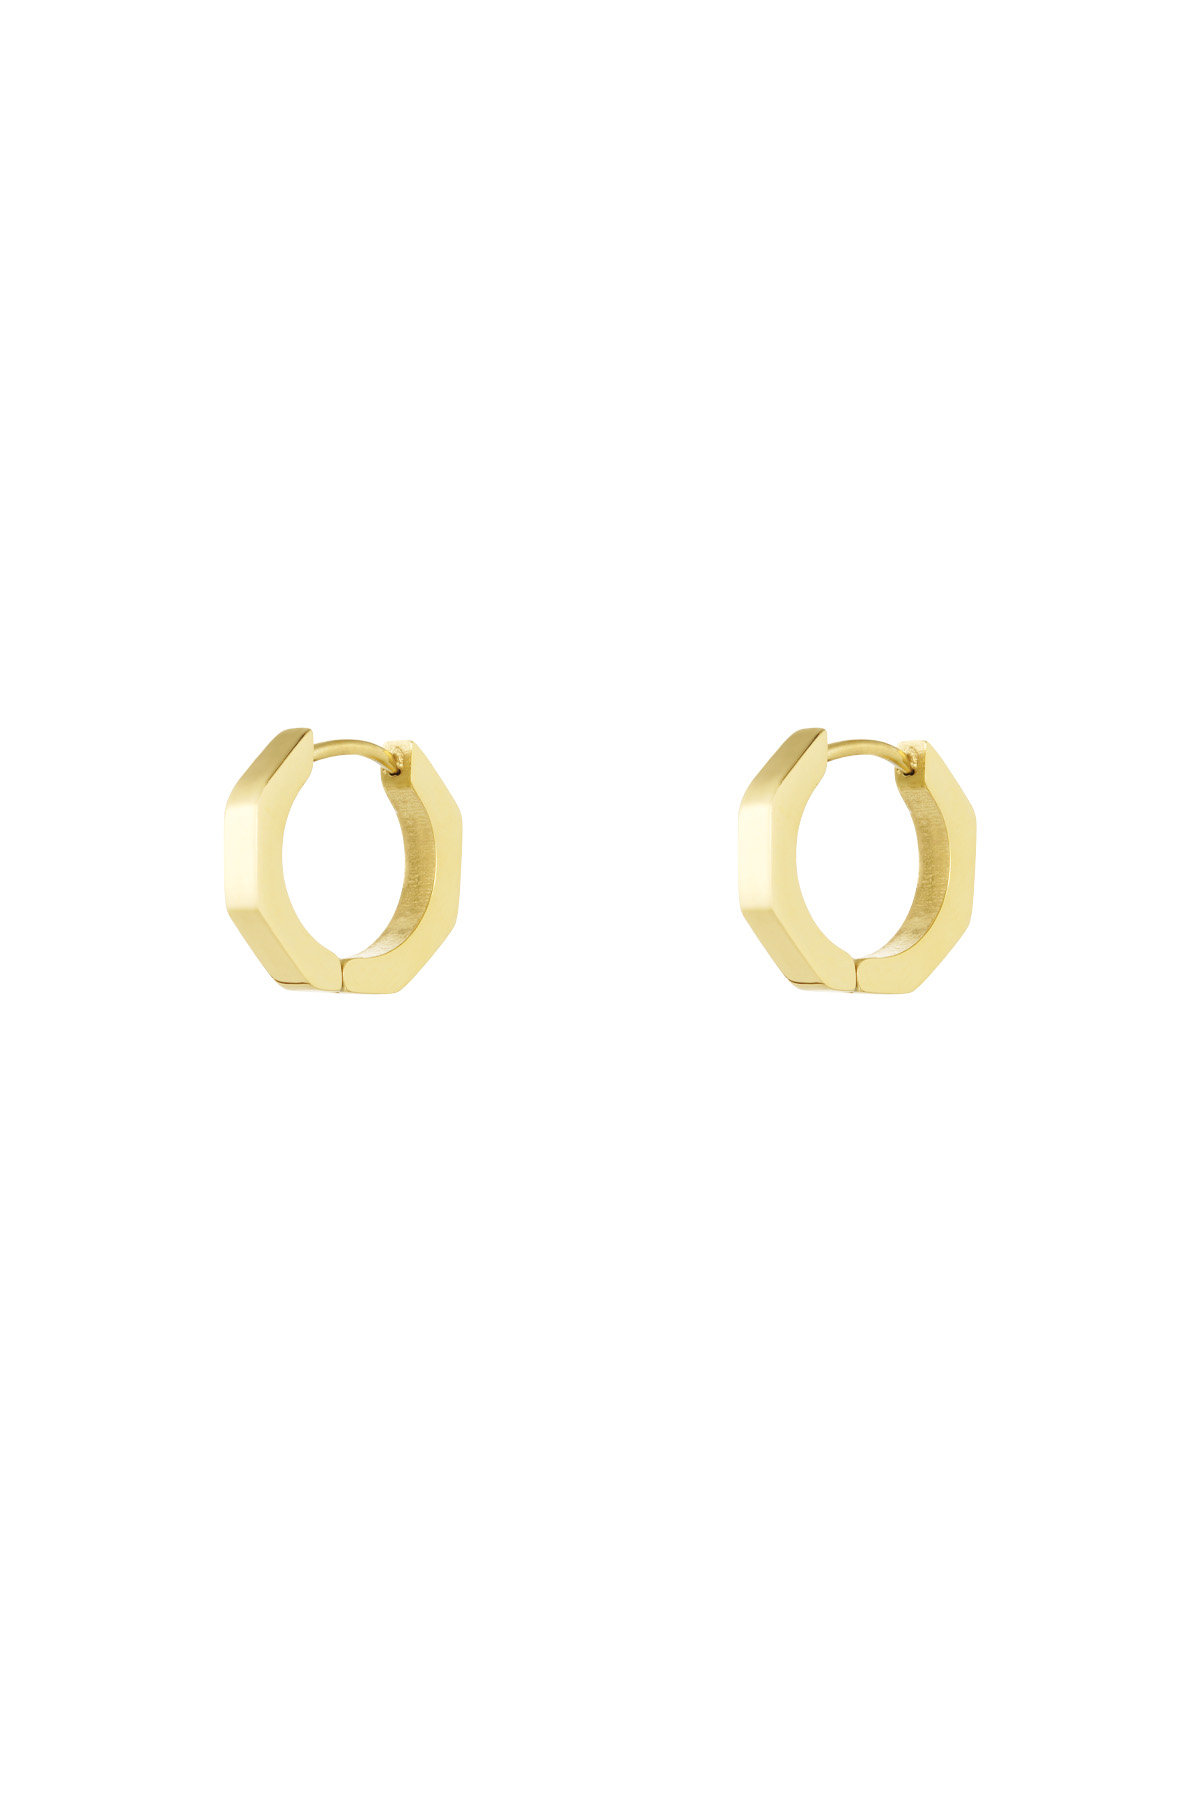 Klassische runde Ohrringe klein - Gold  h5 